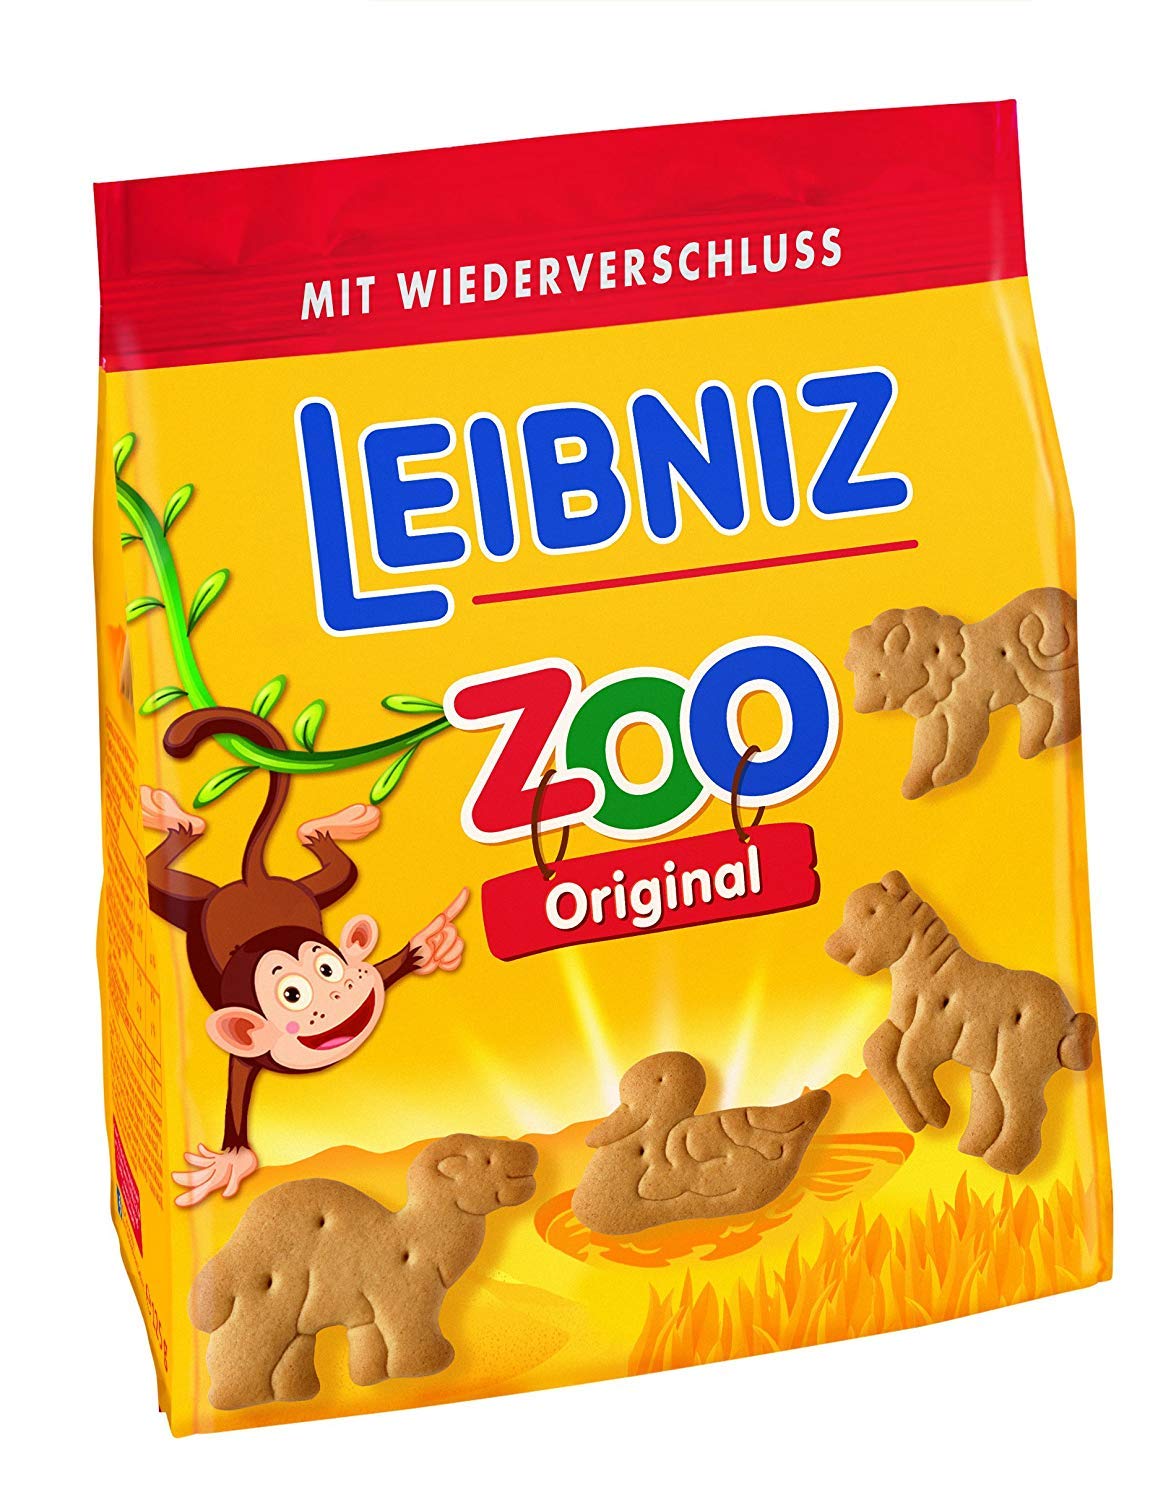 Leibniz Zoo Original 125g - Mini-Butterkekse mit lustigen Tier-Motiven - für Kinder - Kekse zum Spielen - Kinderkekse für den kleinen Hunger